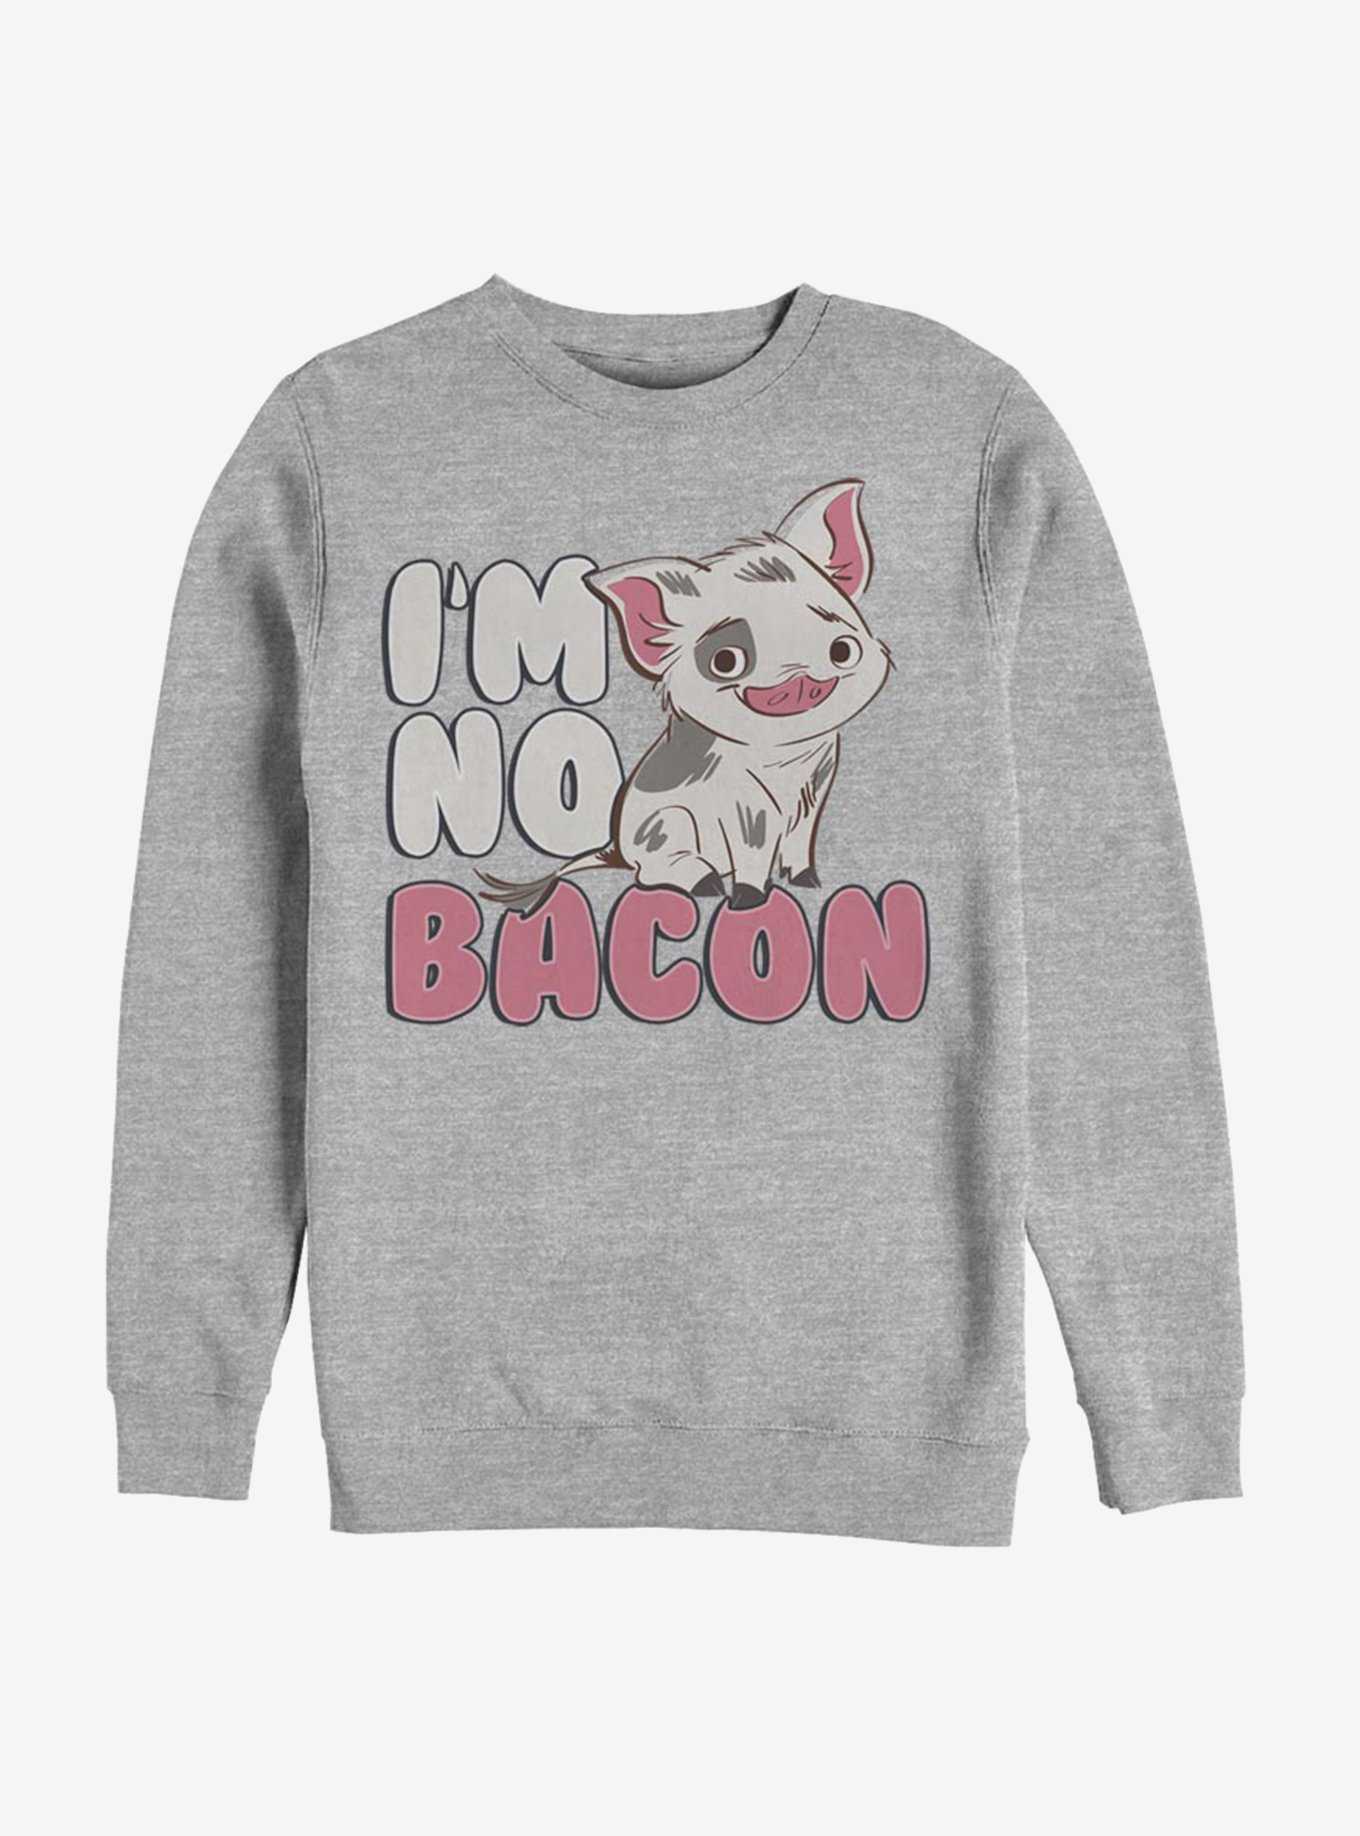 Disney Moana Not Bacon Sweatshirt, , hi-res